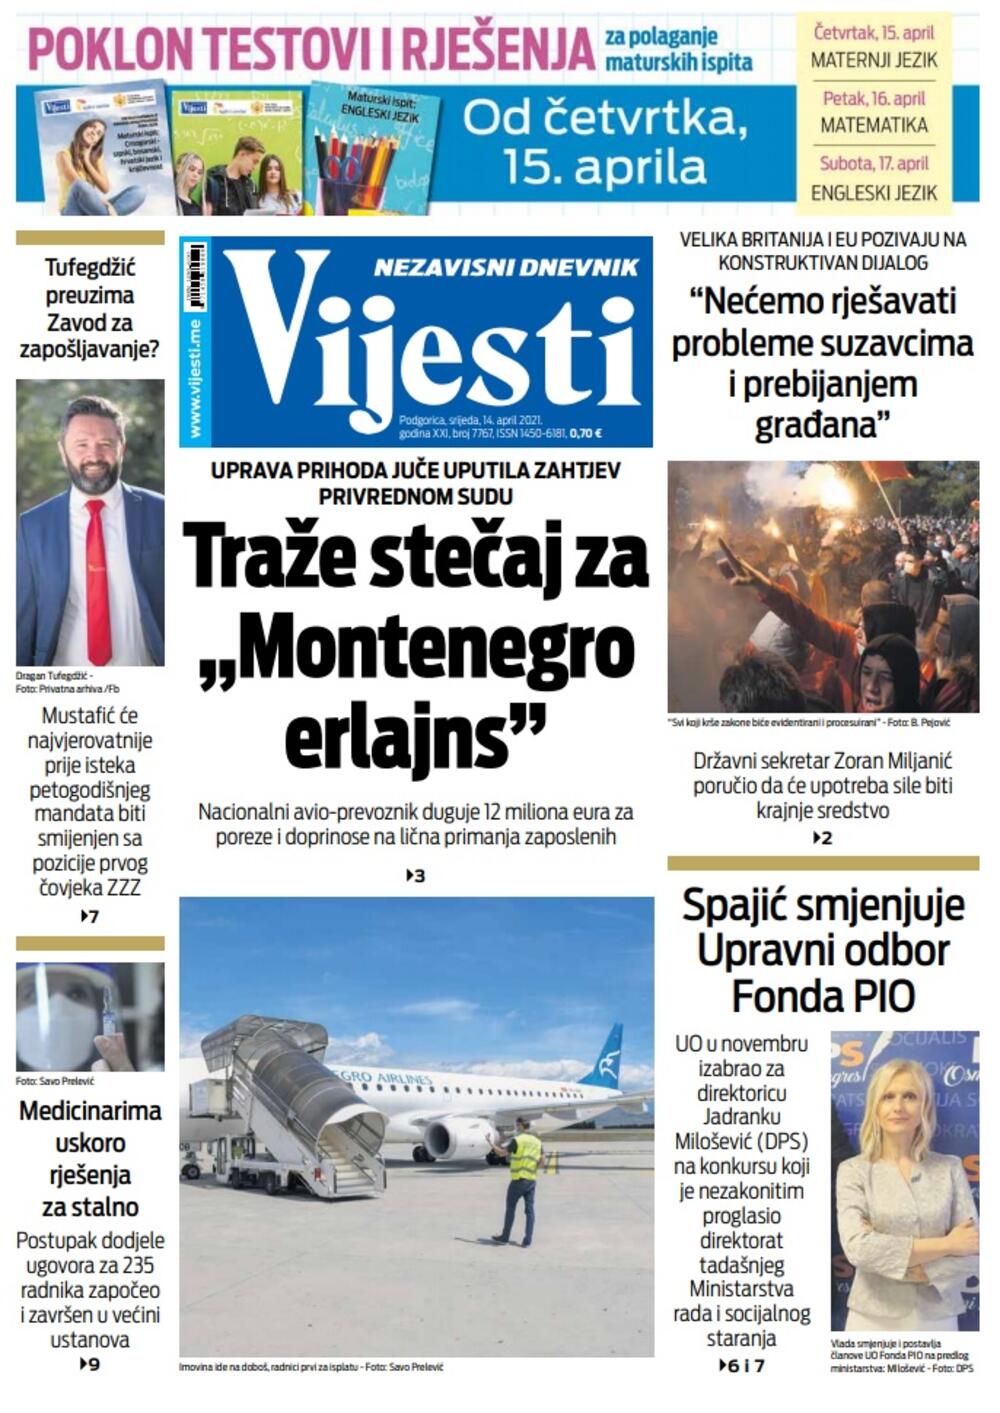 Naslovna strana "Vijesti" za srijedu 14. april 2021. godine, Foto: Vijesti